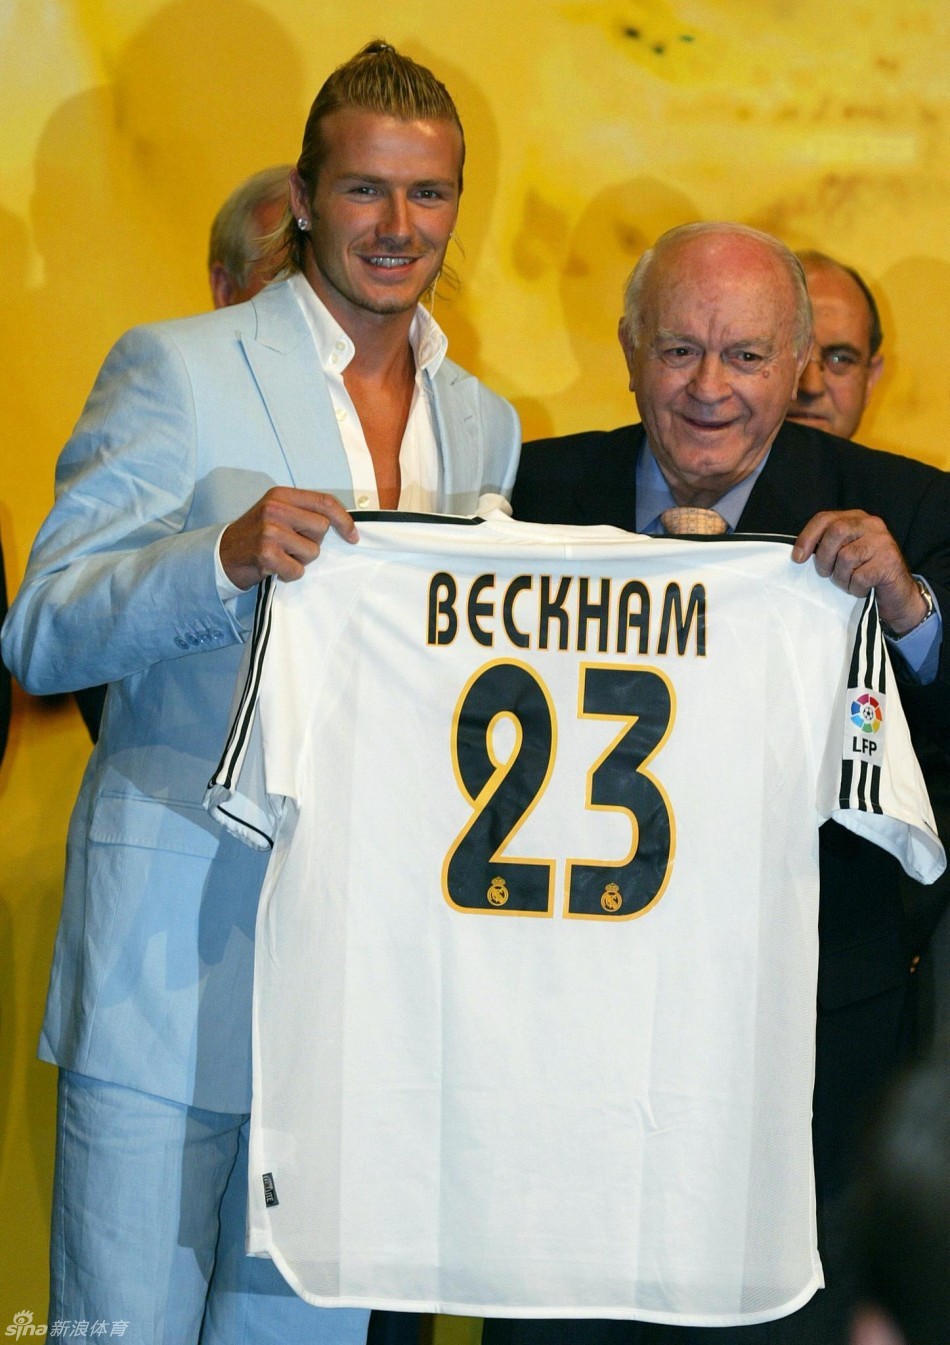 北京时间5月16日晚，英格兰球星贝克汉姆宣布将在本赛季结束后退出职业足坛。现年38岁的贝克汉姆此前代表英格兰出战国际比赛115场，58场以队长身份参加。贝克汉姆在曼联开始职业生涯，赢得过一次欧冠冠军、6次英超冠军、2次足总杯冠军。2003年，他加盟皇马，2007年夺得西甲冠军之后加盟了美国大联盟的洛杉矶银河队。效力于洛杉矶银河期间，他又两度以租借的方式加盟AC米兰。